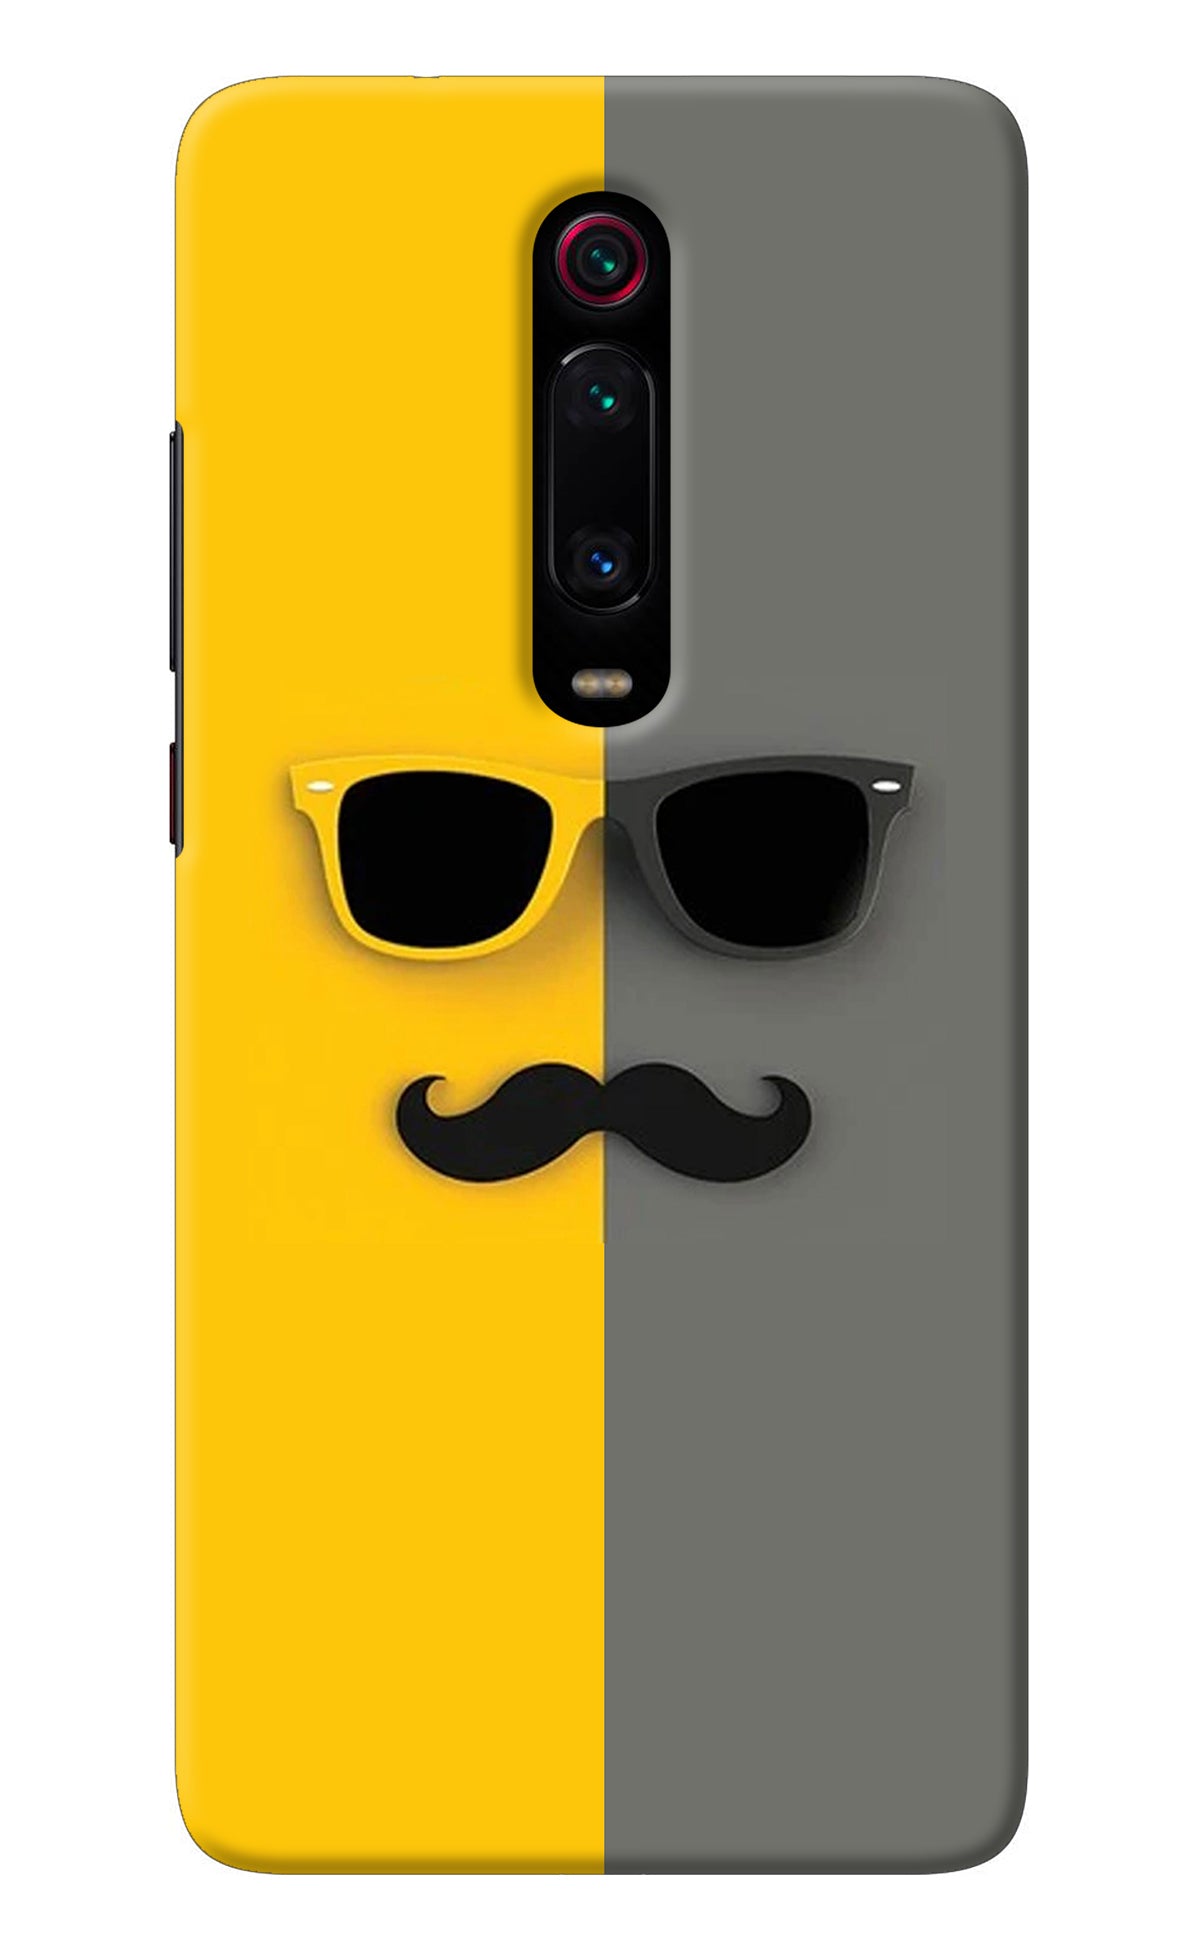 Sunglasses with Mustache Redmi K20 Pro Back Cover